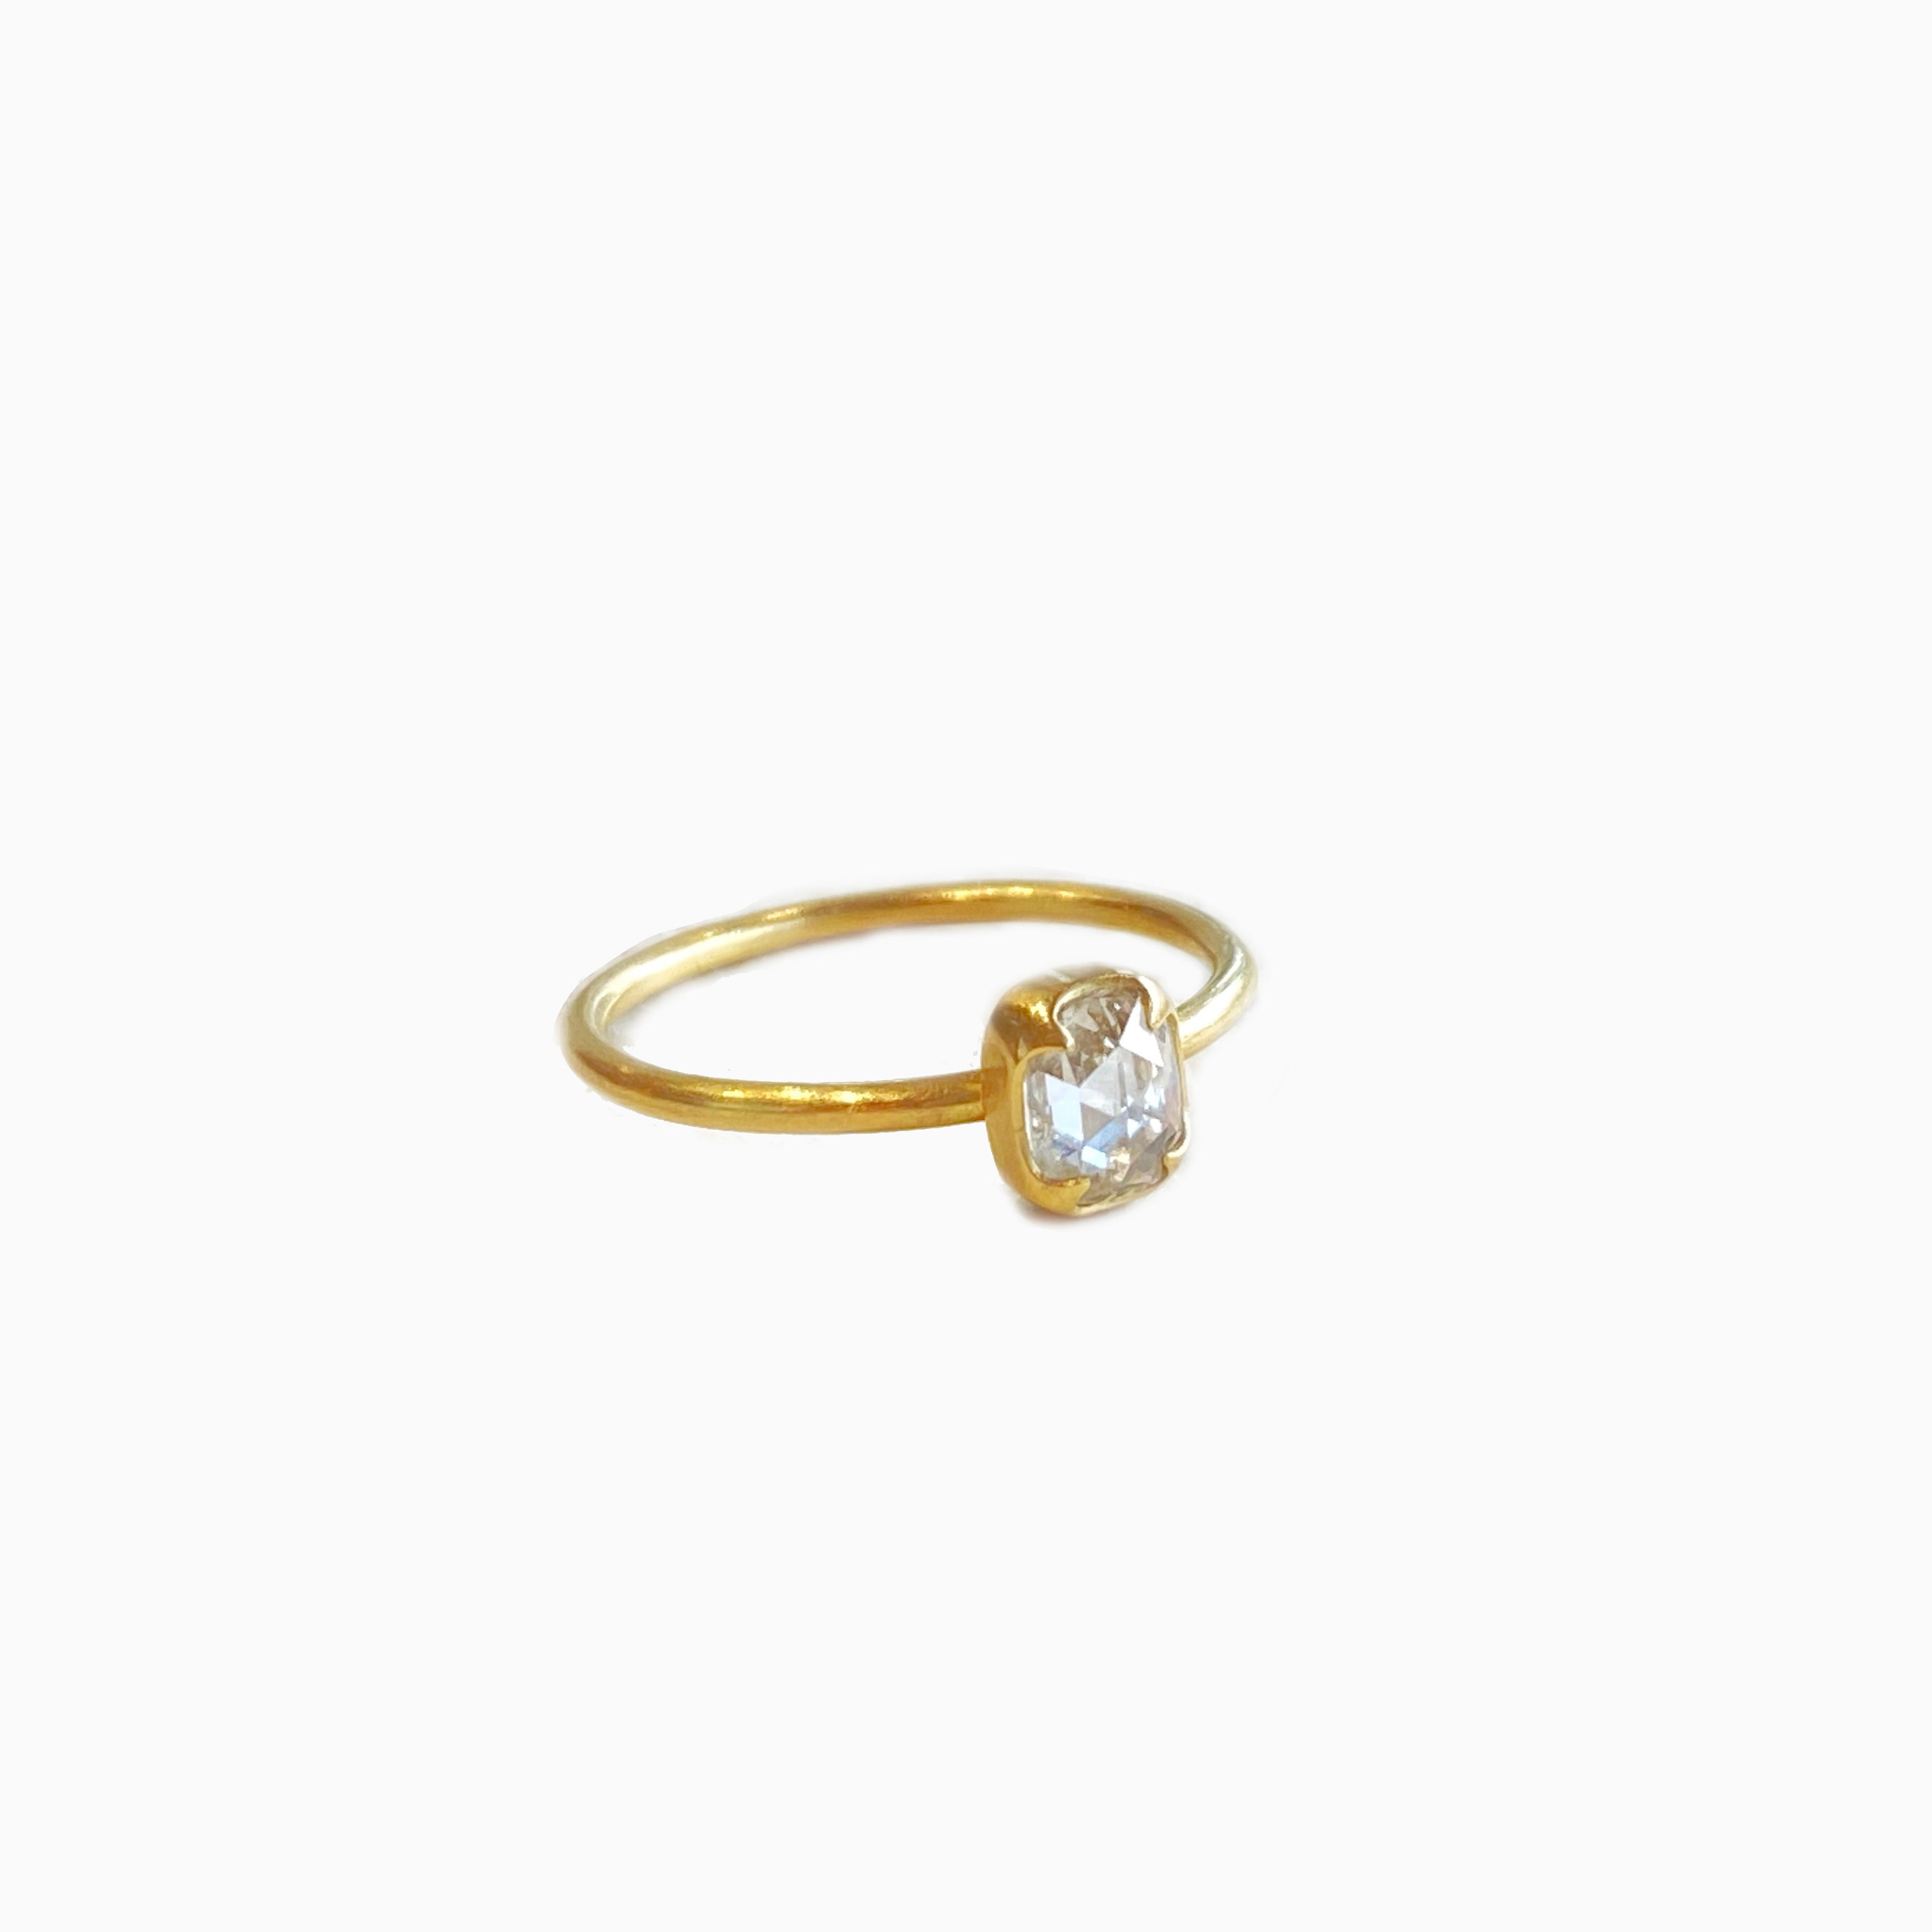 White Rose-Cut Diamond Ring